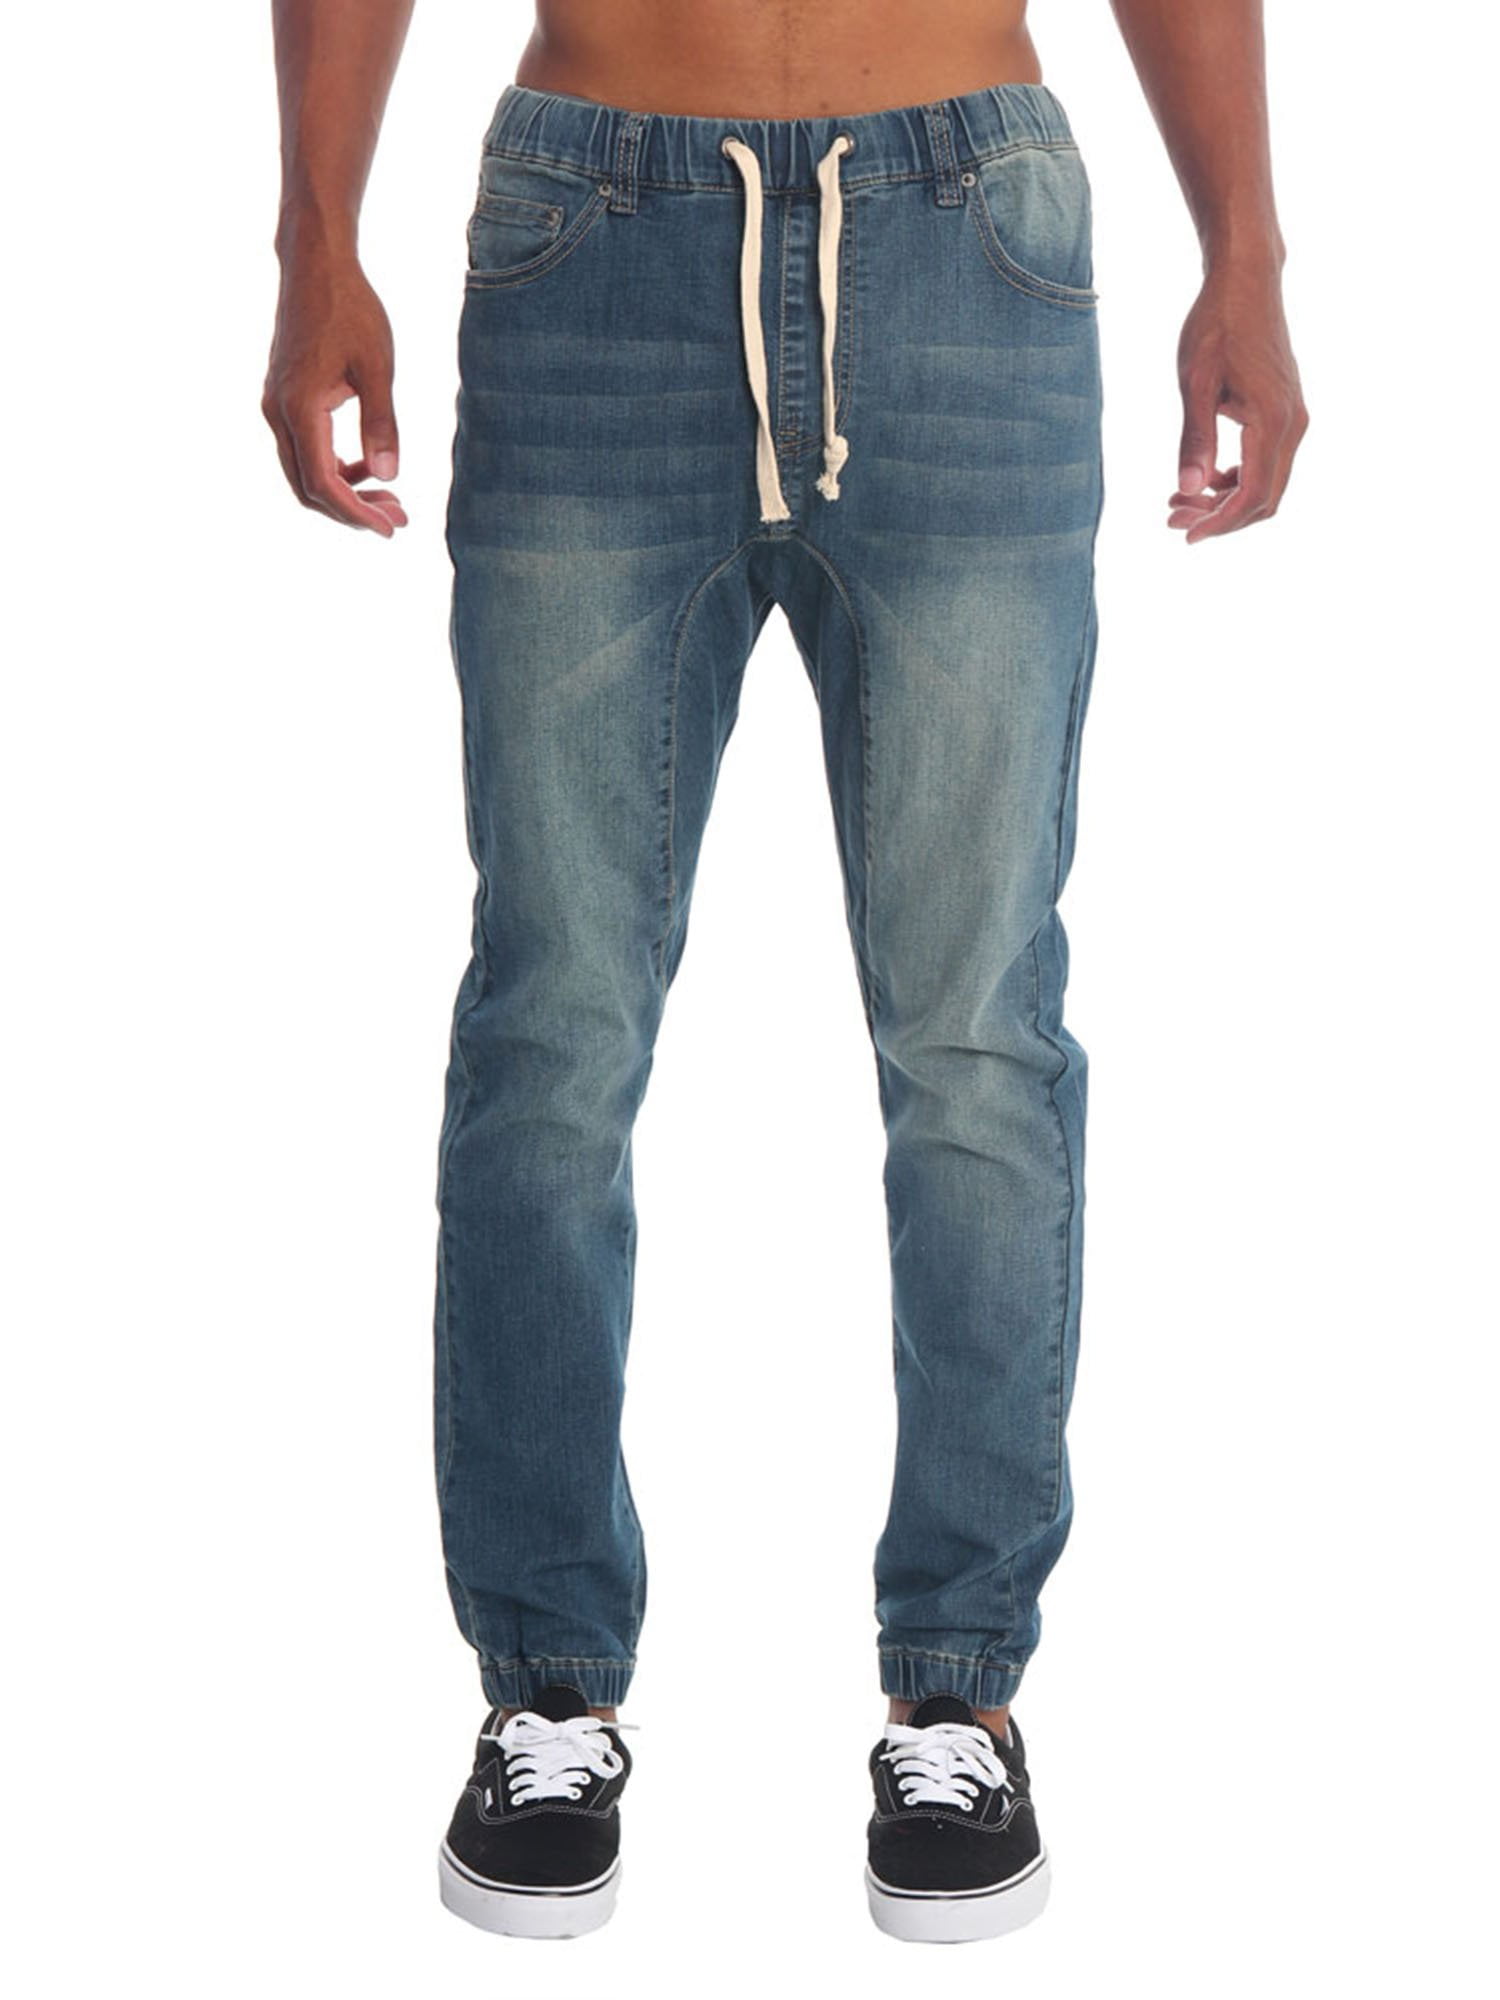 Men Fashion Elastic Waist Jeans Teen Boys Slim Fit Vintage Wash Drop Crotch Biker Jogger Denim Pants Trousers